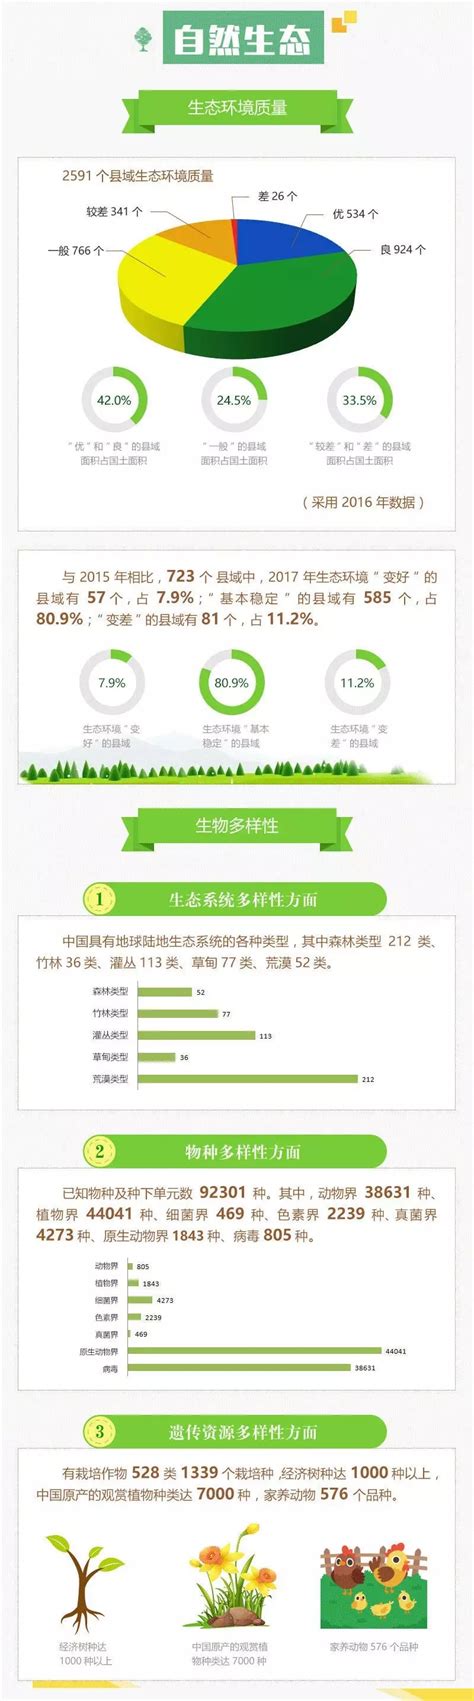 环保市场分析报告_2019-2025年中国环保行业深度调研与发展前景预测报告_中国产业研究报告网